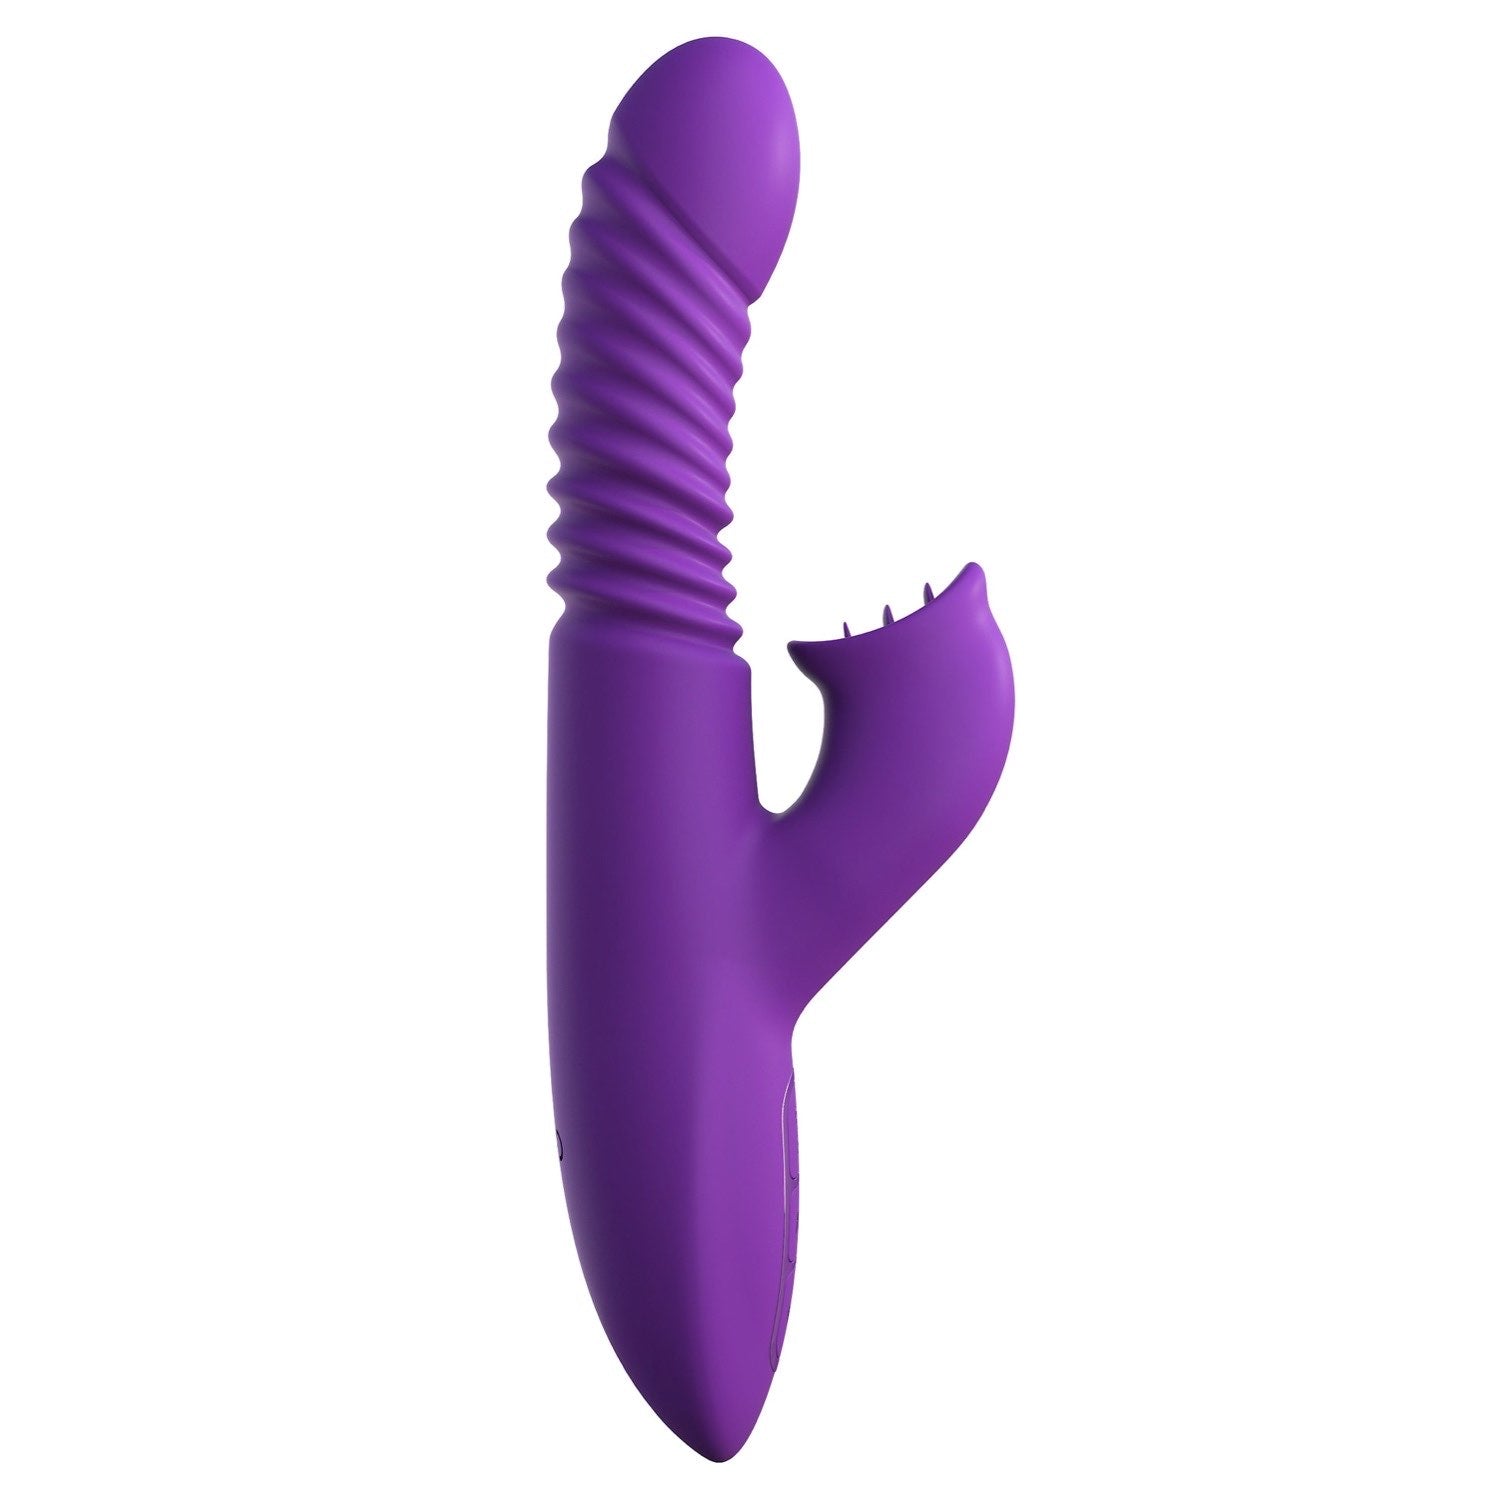 为她幻想 终极推力阴蒂刺激 - 紫色 USB 可充电推力兔子振动器 by Pipedream